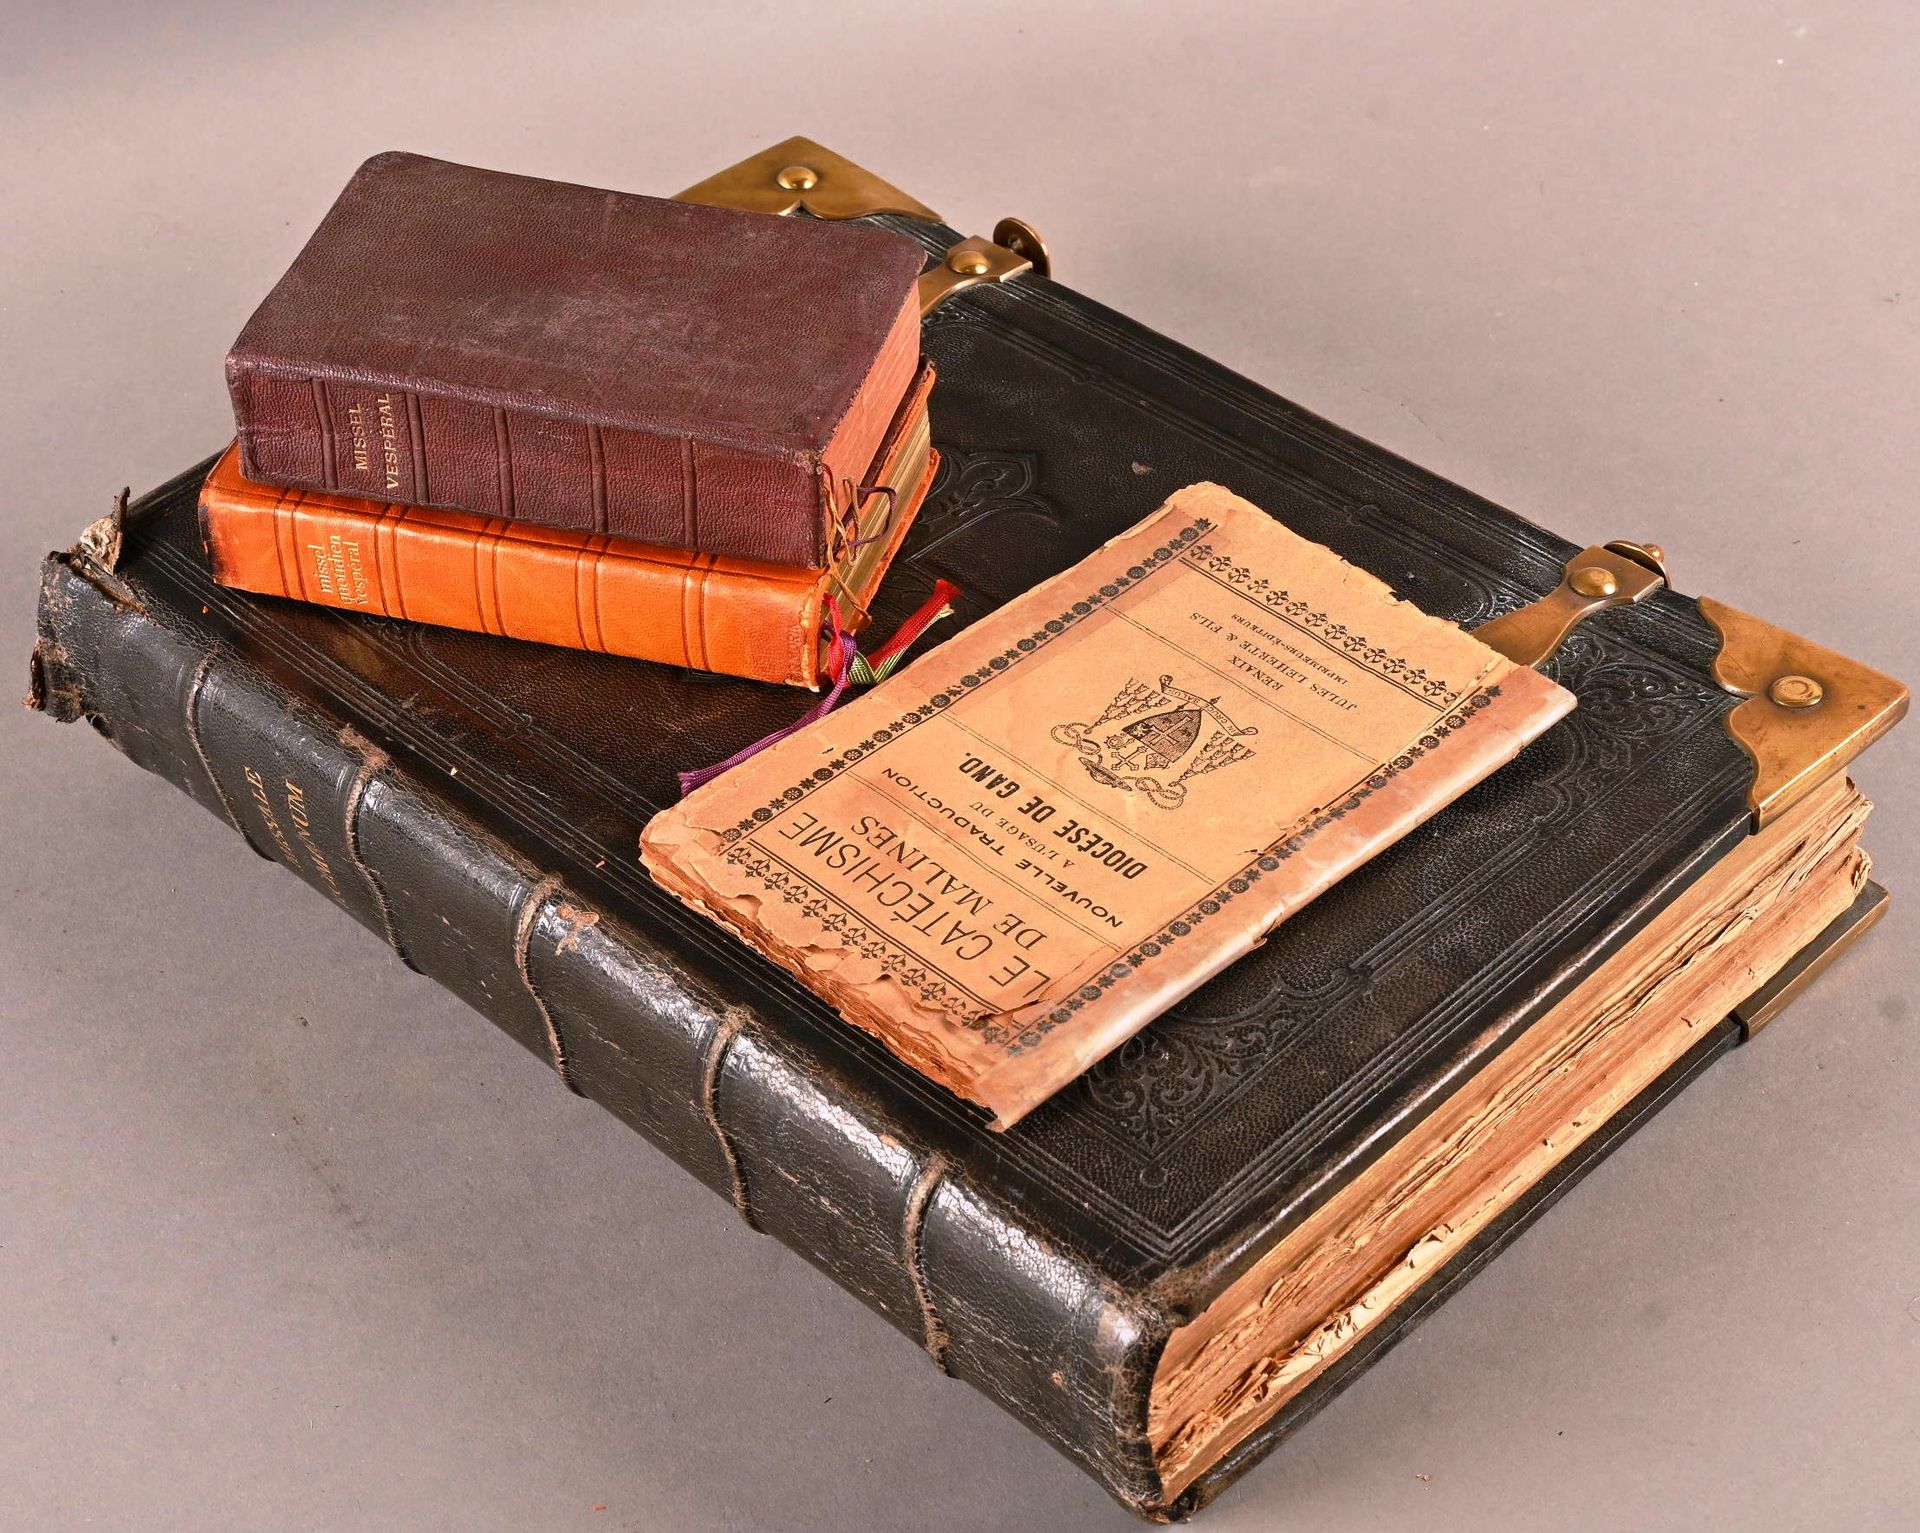 Missale Romanum, 1872. Missale Romanum, 1872.
En estado usado con rasgaduras y p&hellip;